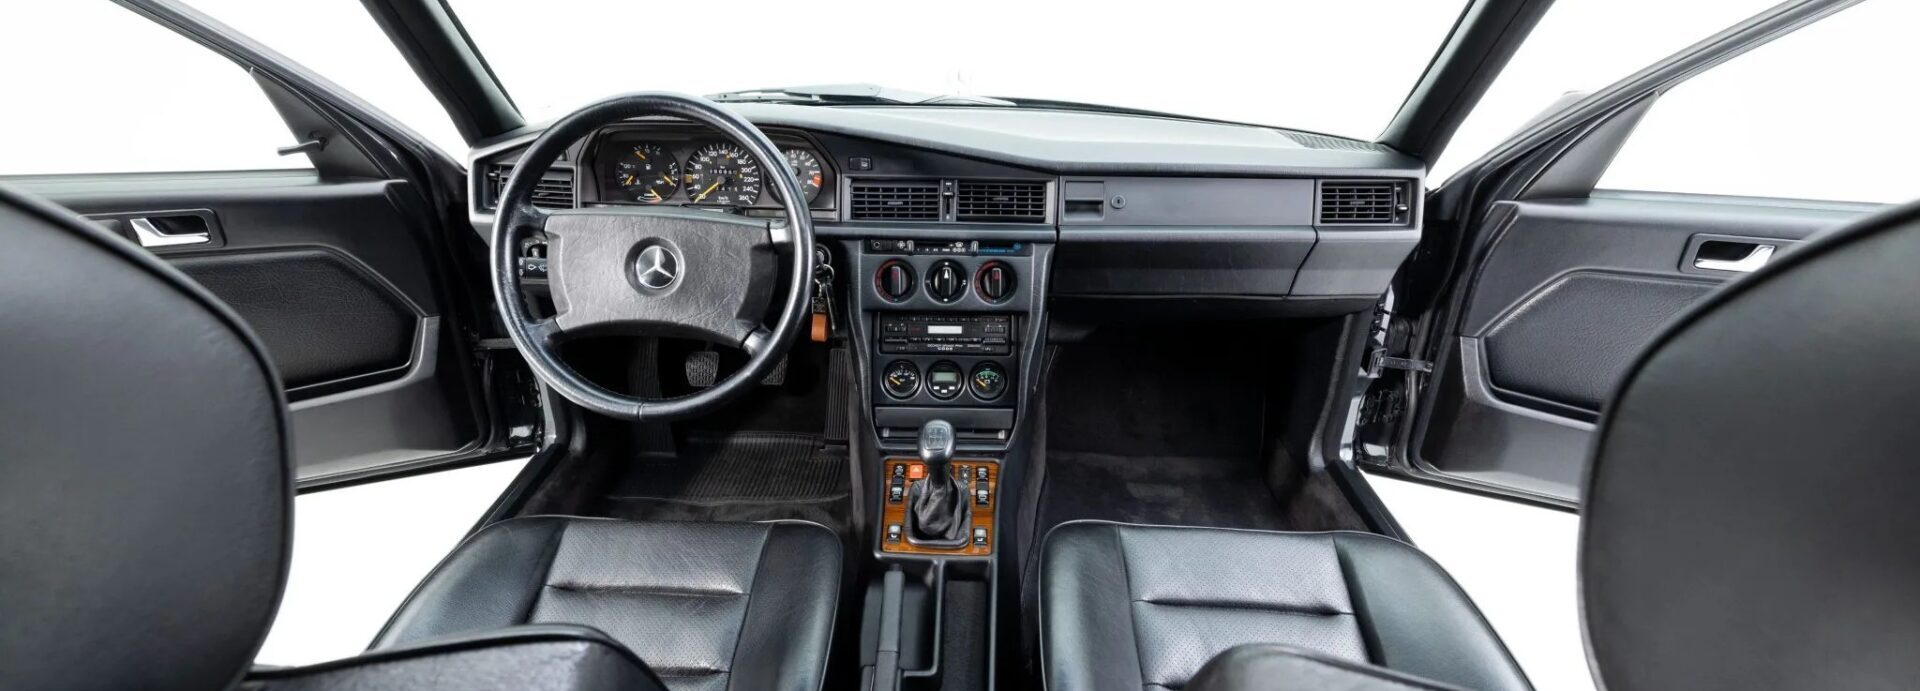 Mercedes-Benz 190E 2.5 16 Evolution 1989 года, капсула времени из Золотого века гонок